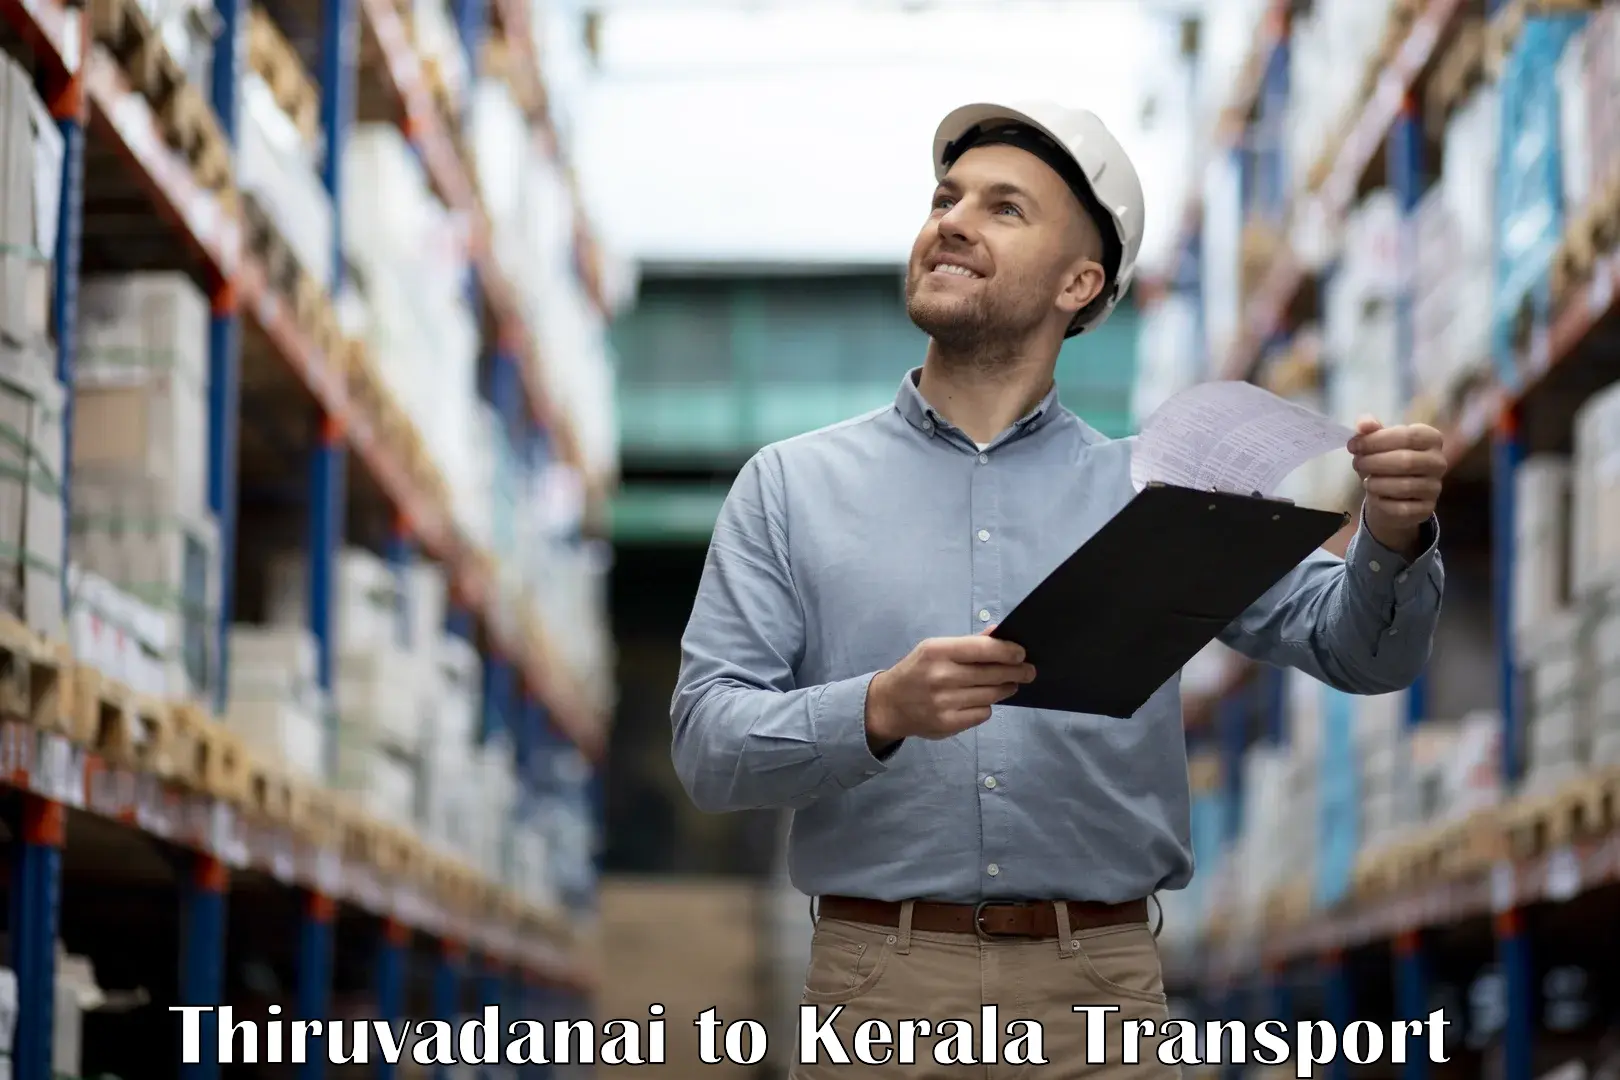 Daily transport service Thiruvadanai to Kerala